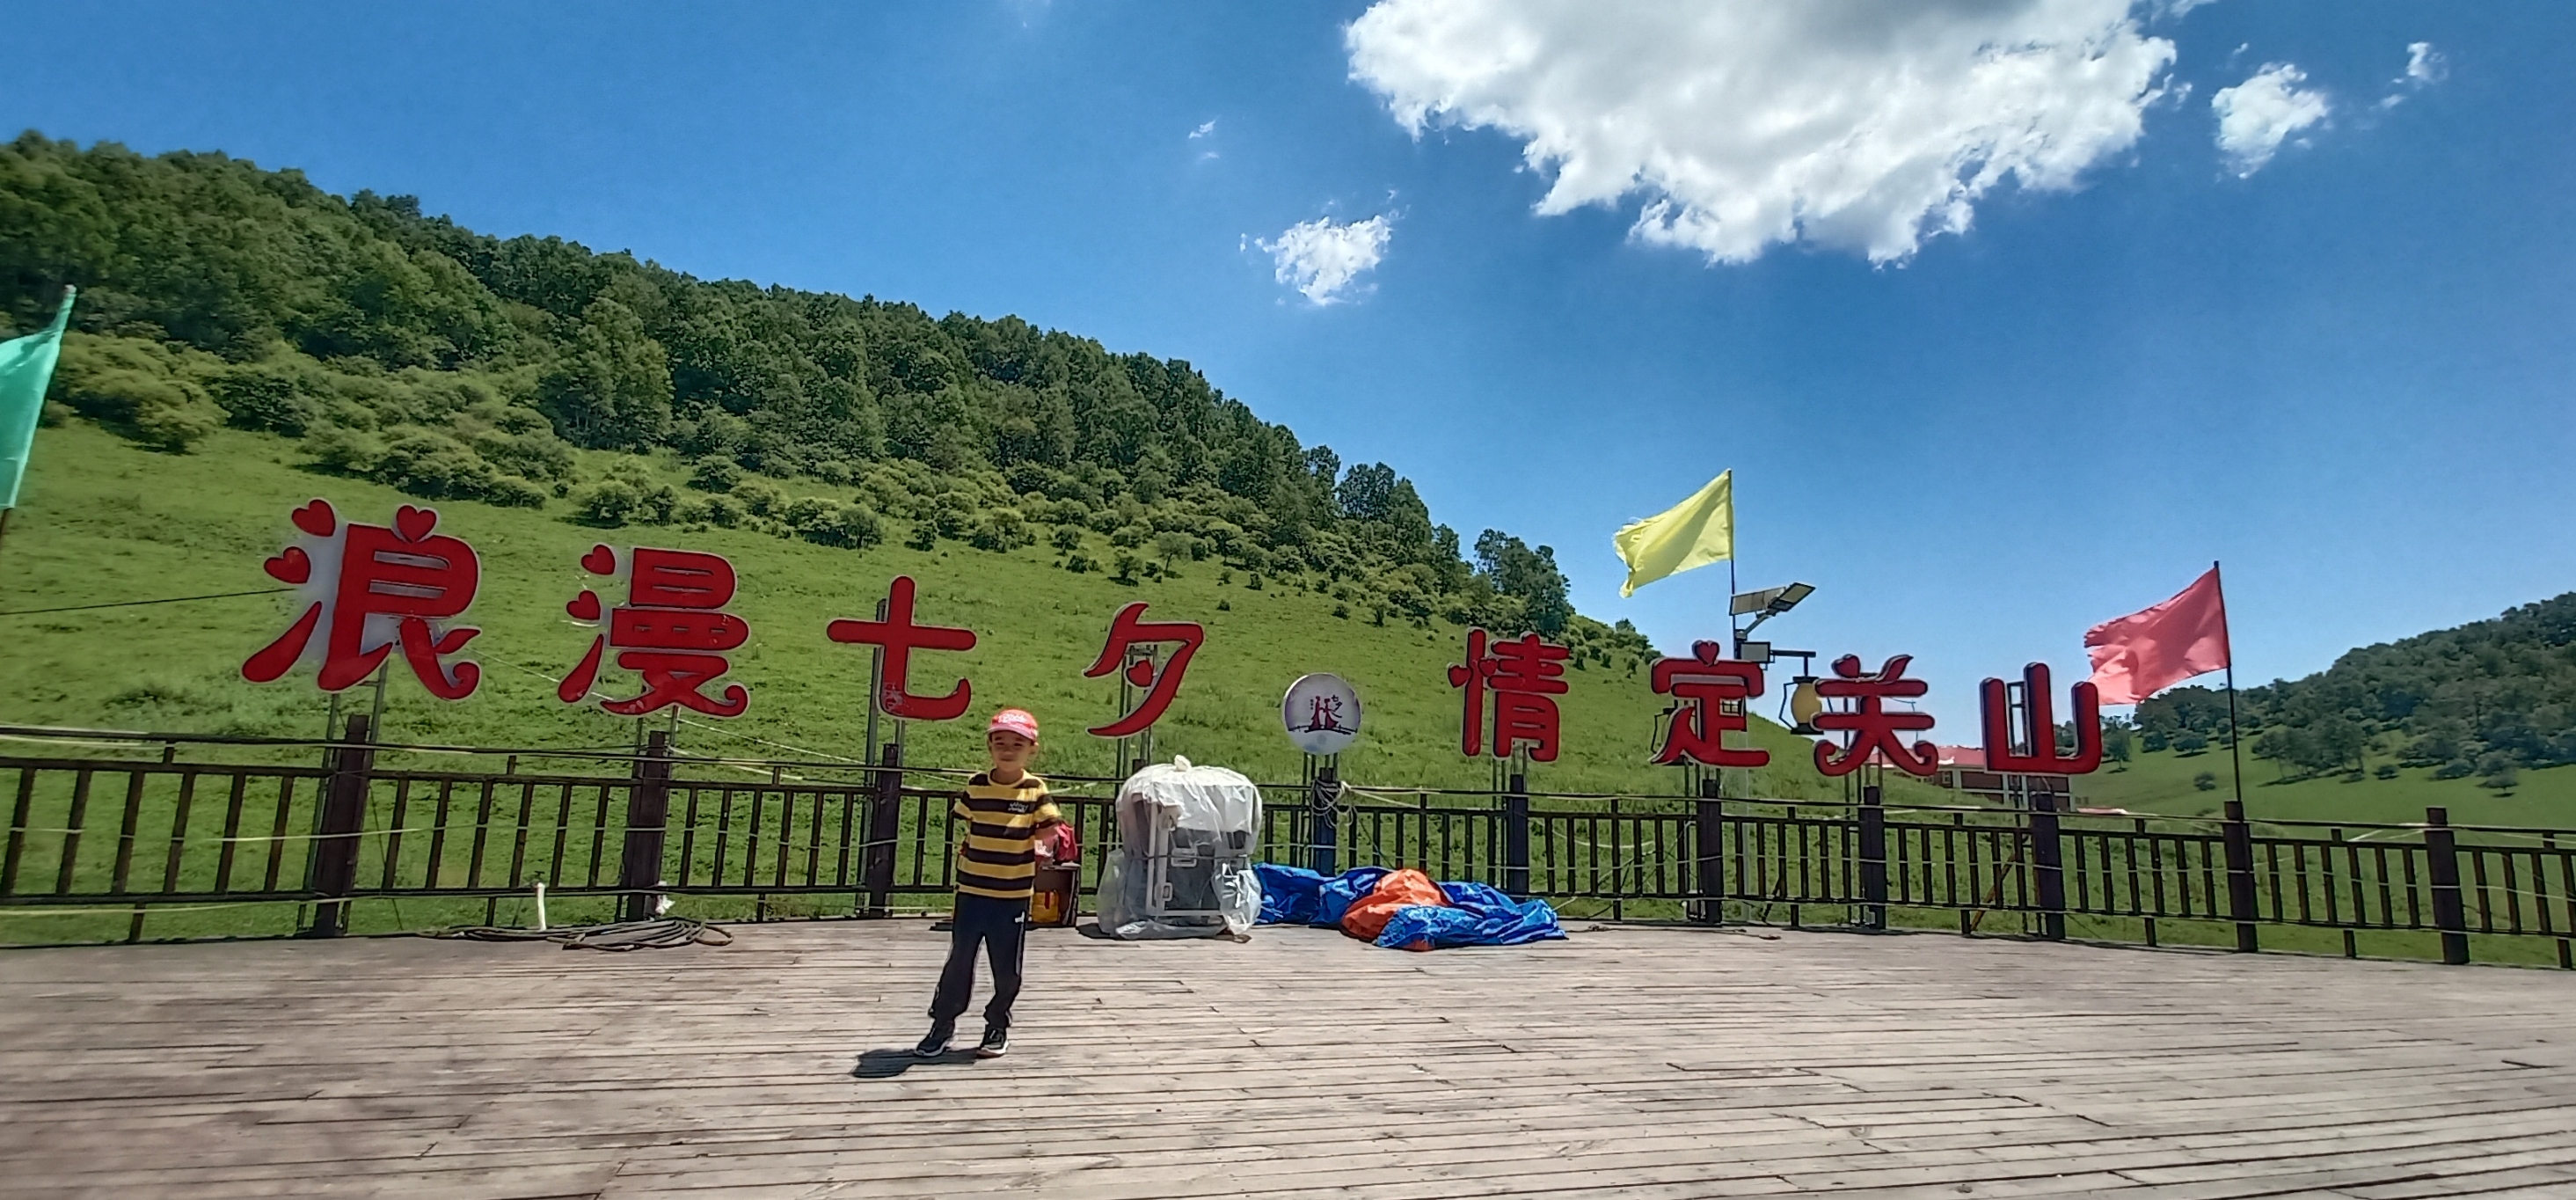 关山草原，位于陕西省宝鸡市陇县境内。距离宝鸡大概2个小时车程，从西安开车过去是差不多2个半小时。也可